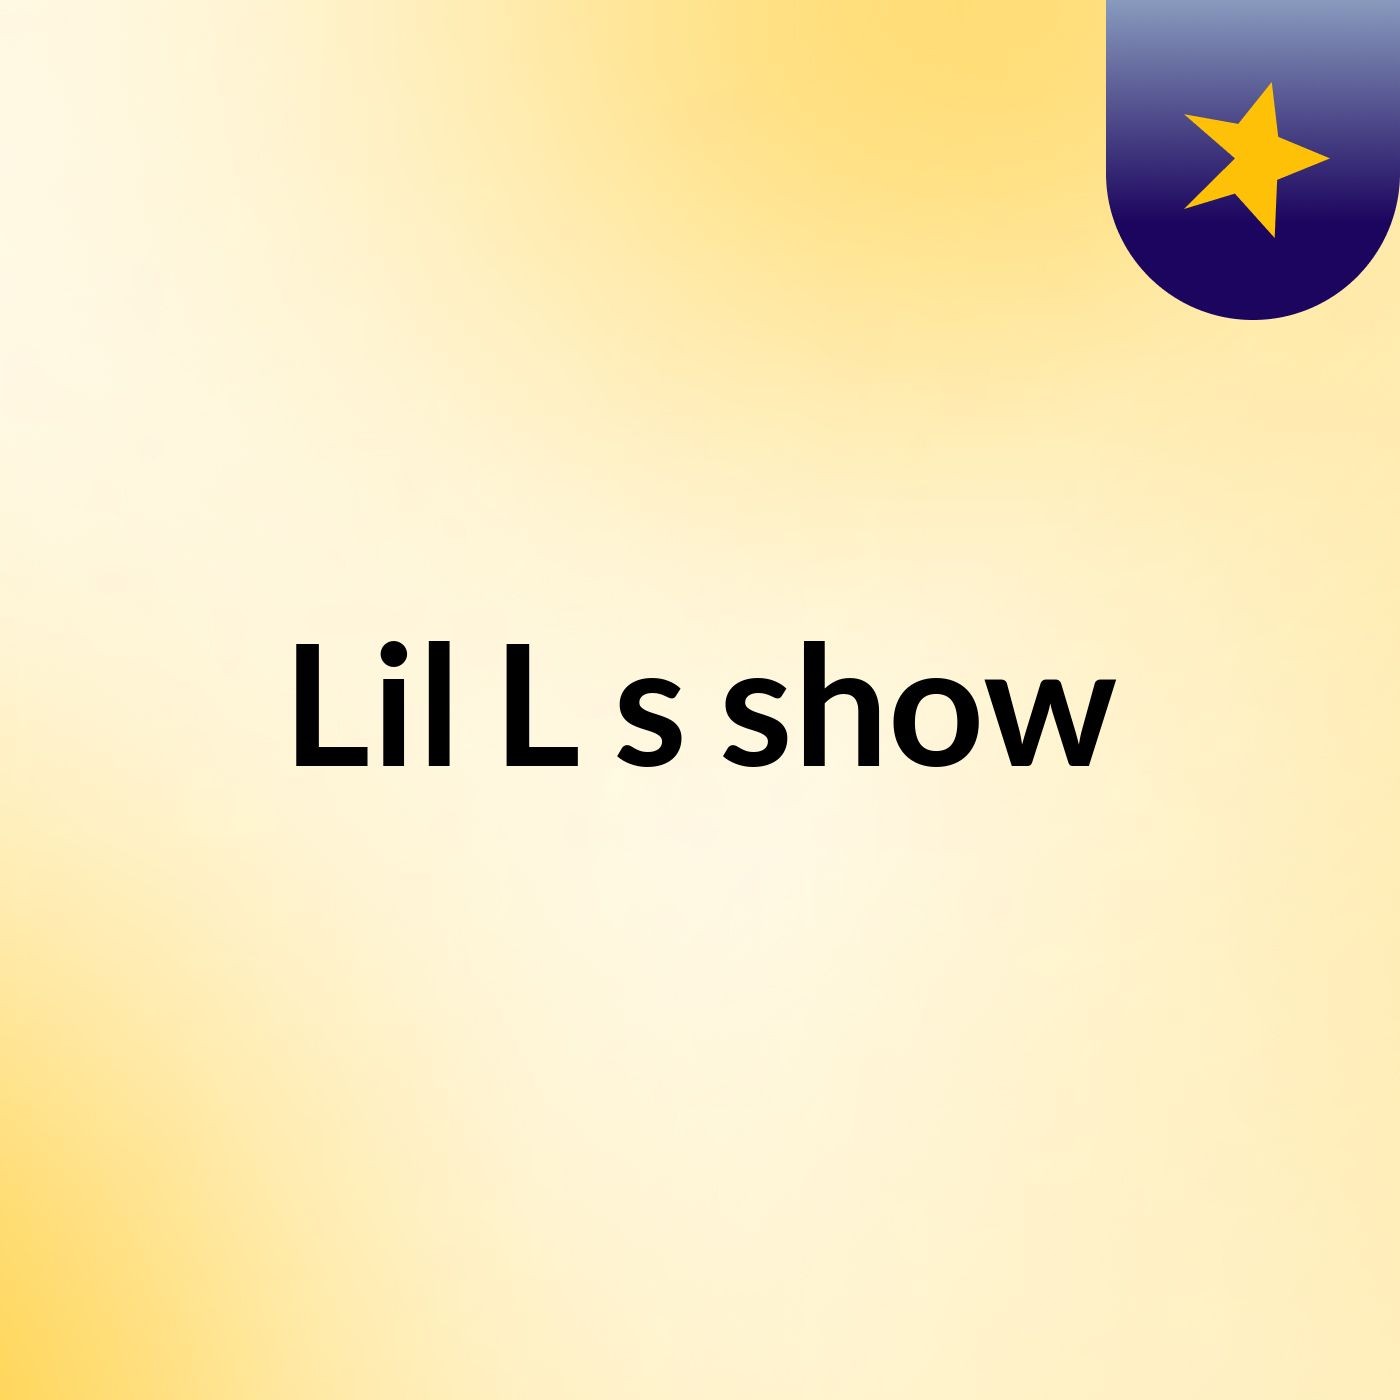 Episode 3 - Lil L's show